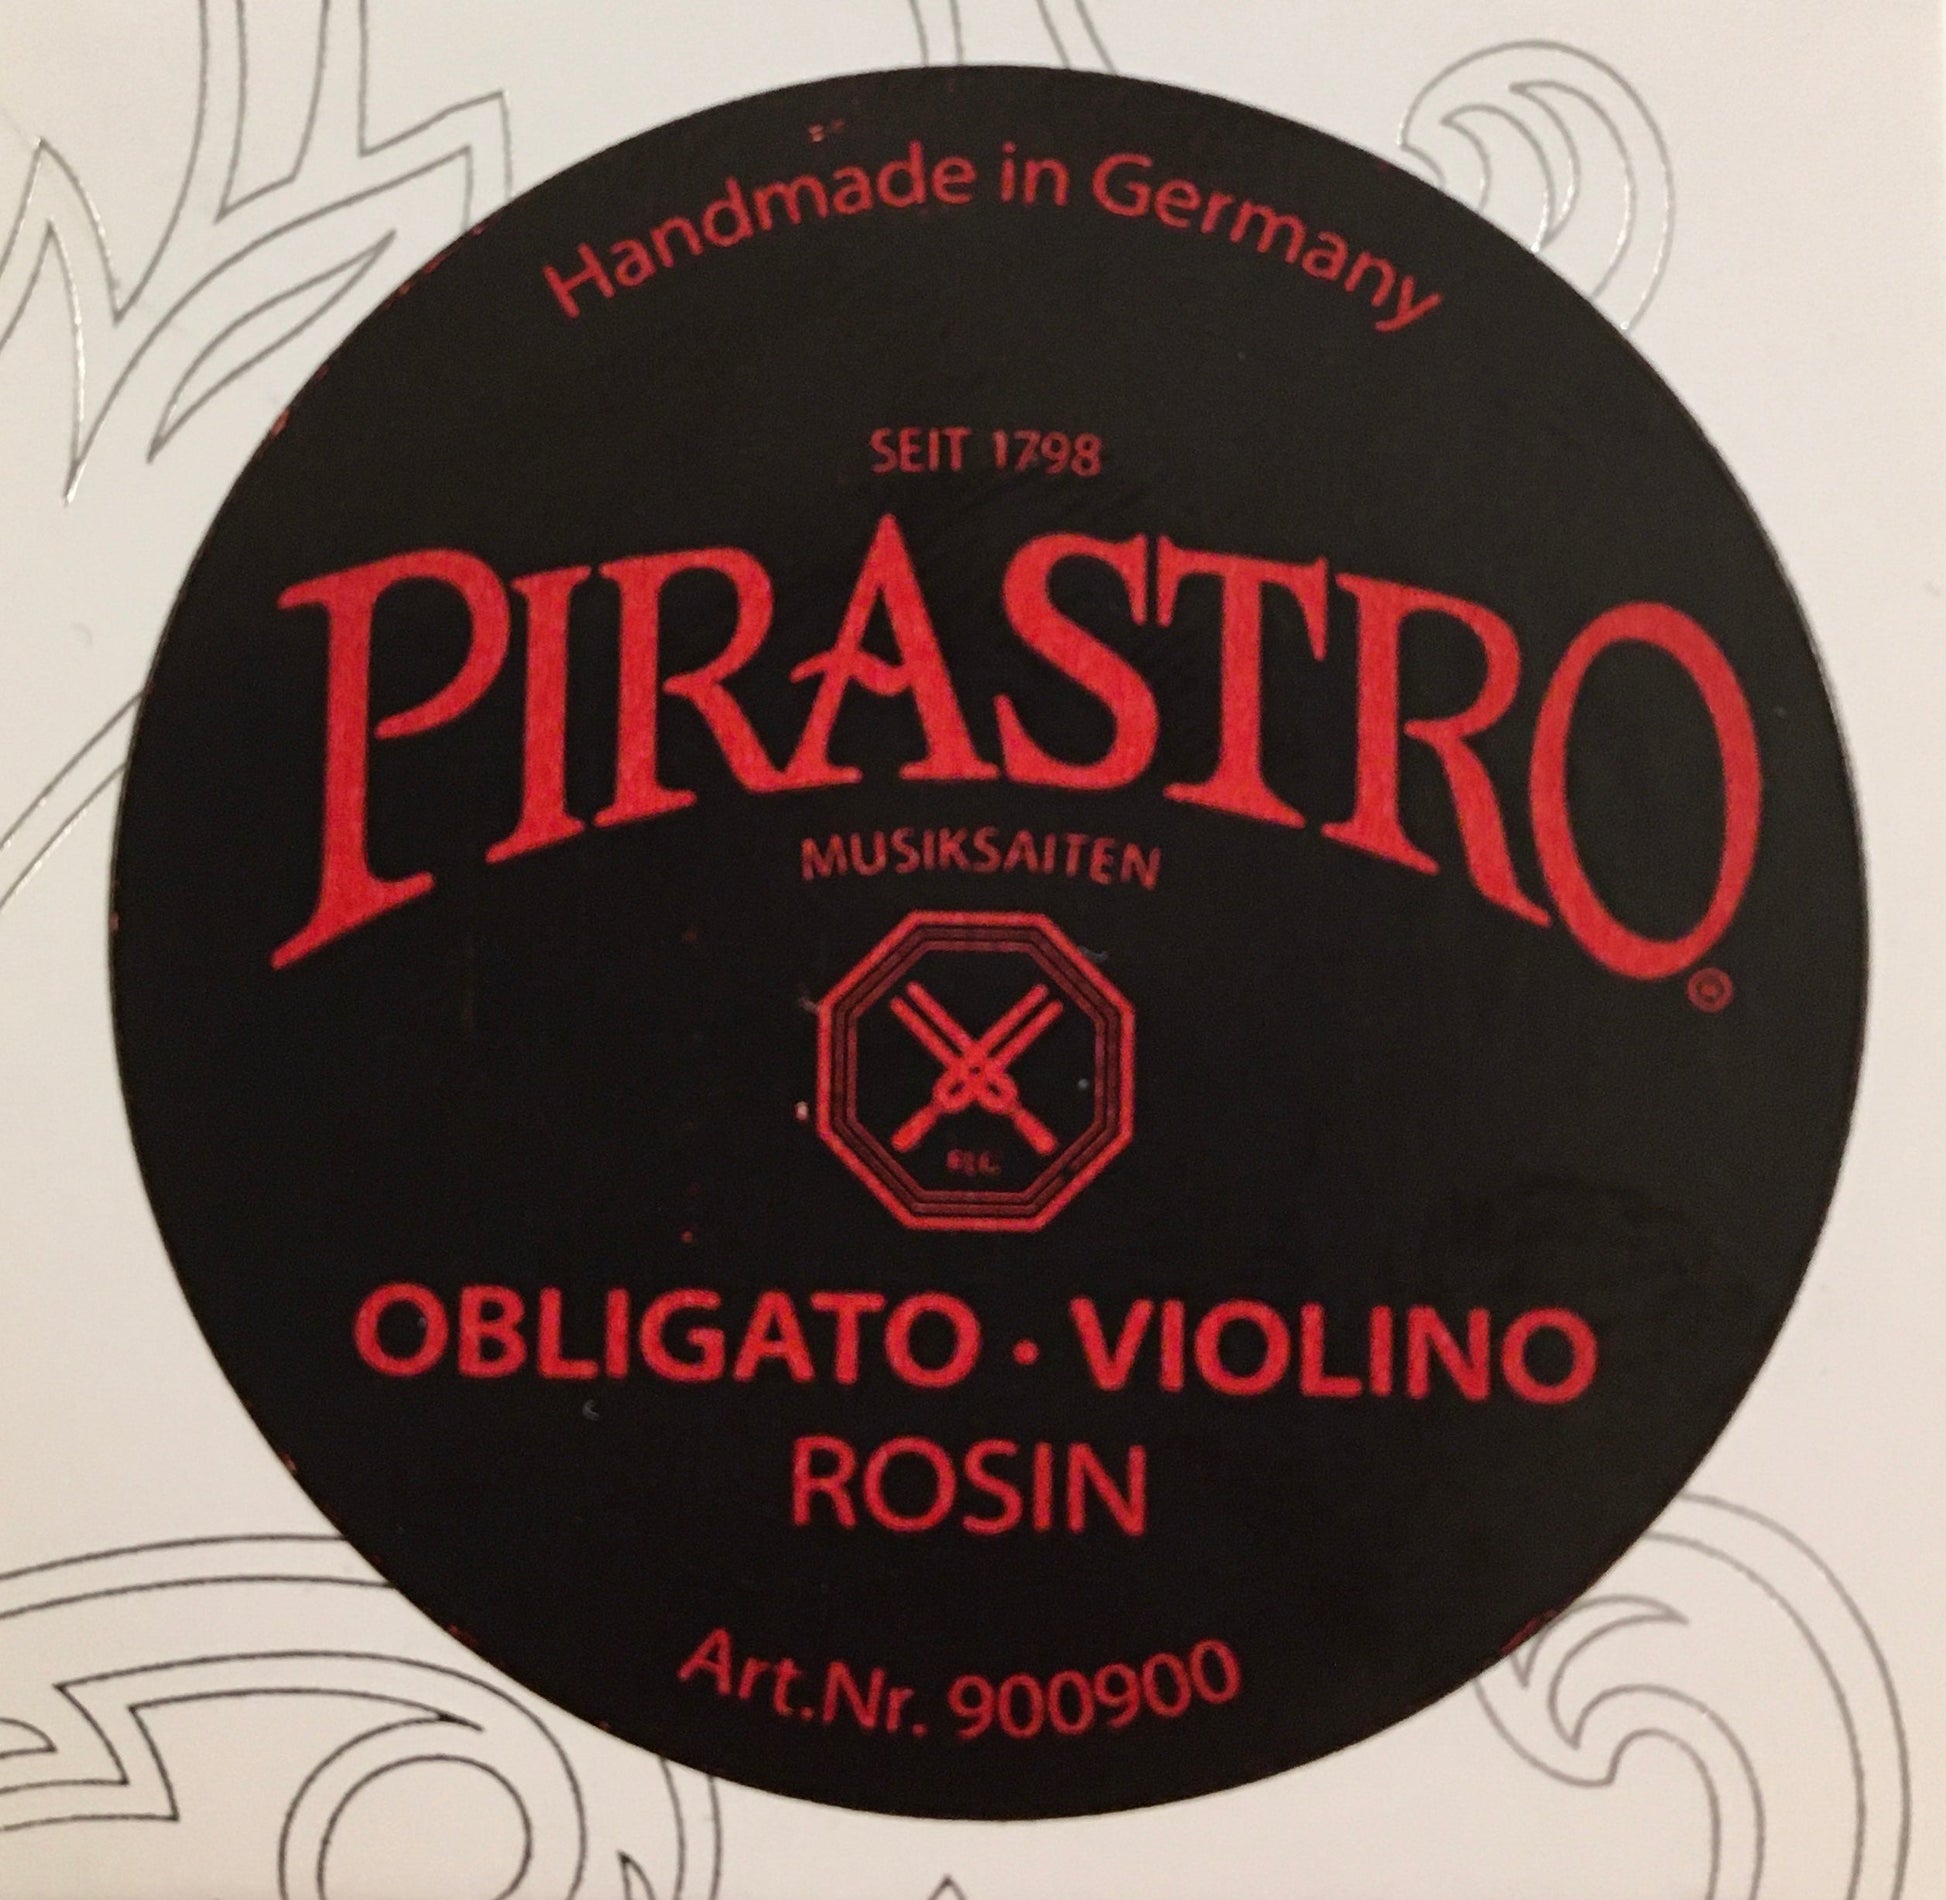 Pirastro OBLIGATO-VIOLINO Violin/Viola Rosin Strings, Bows & More